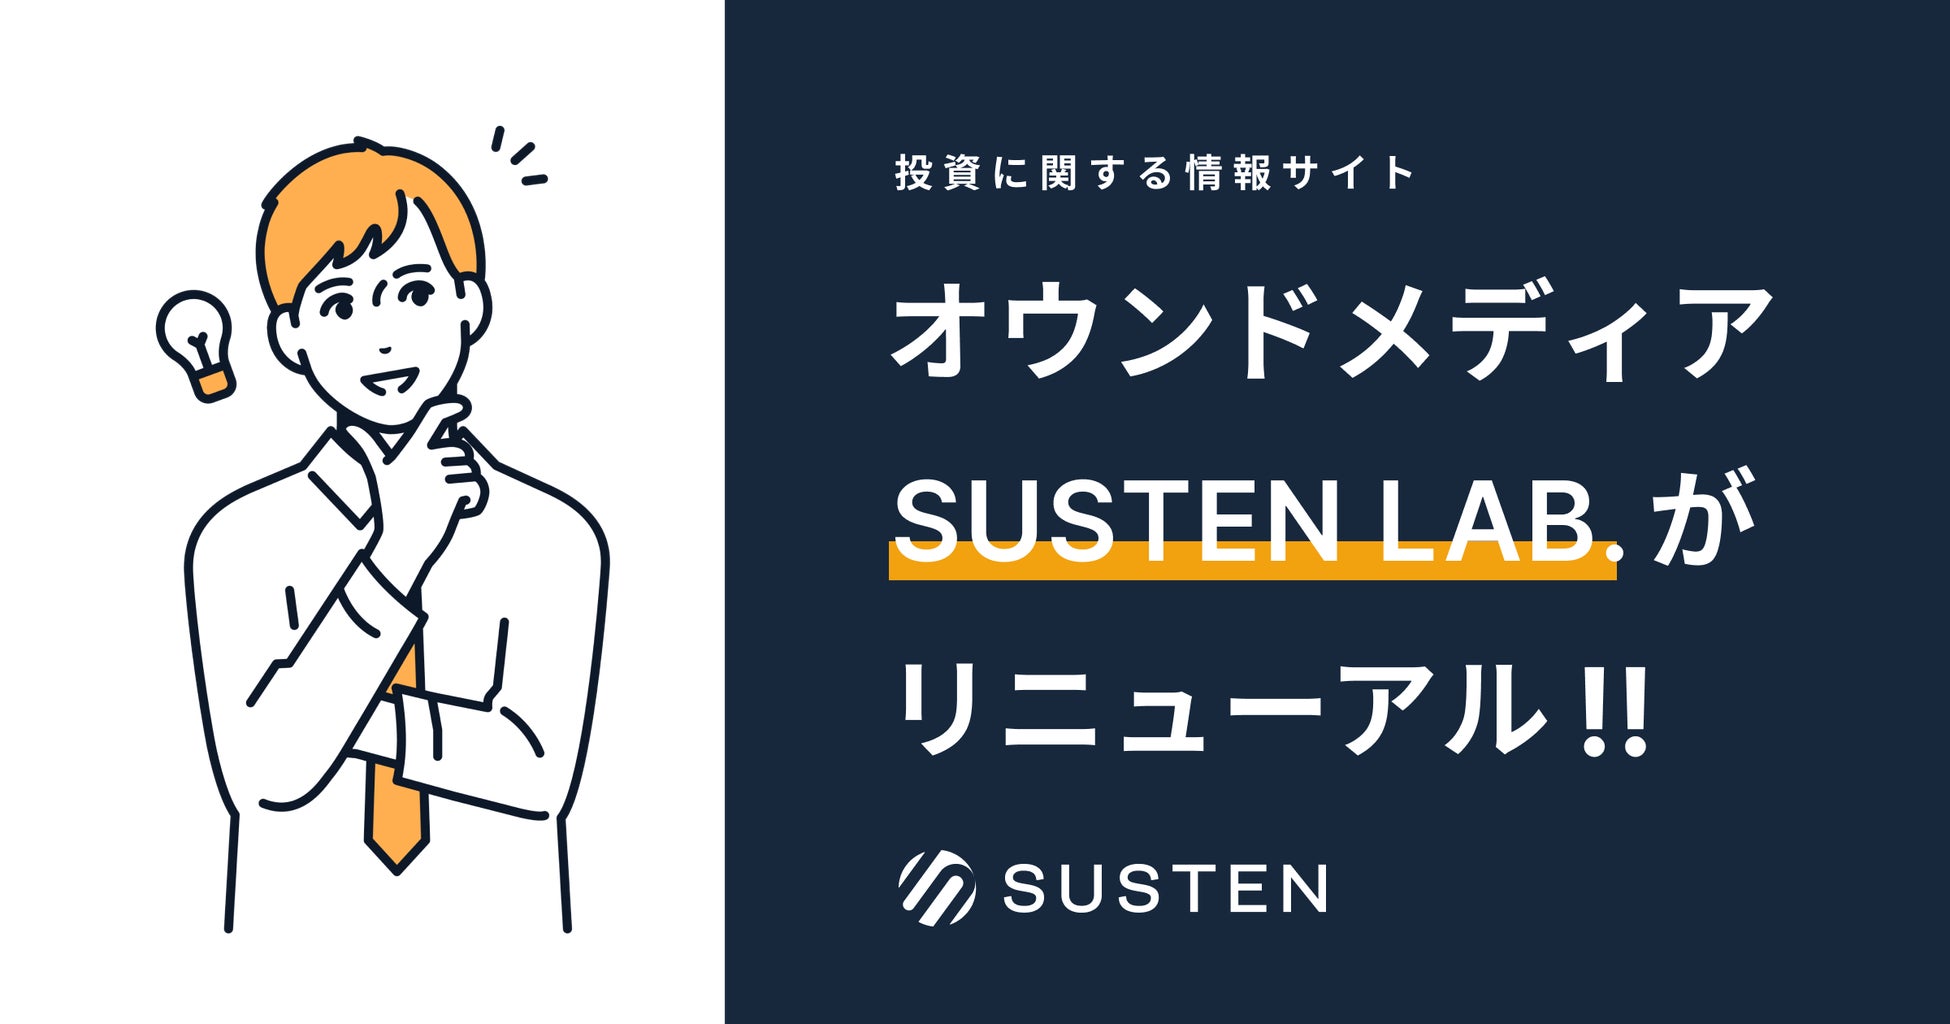 おまかせ資産運用サービス『SUSTEN（サステン）』、資産運用情報メディア「SUSTEN LAB.」をリニューアル